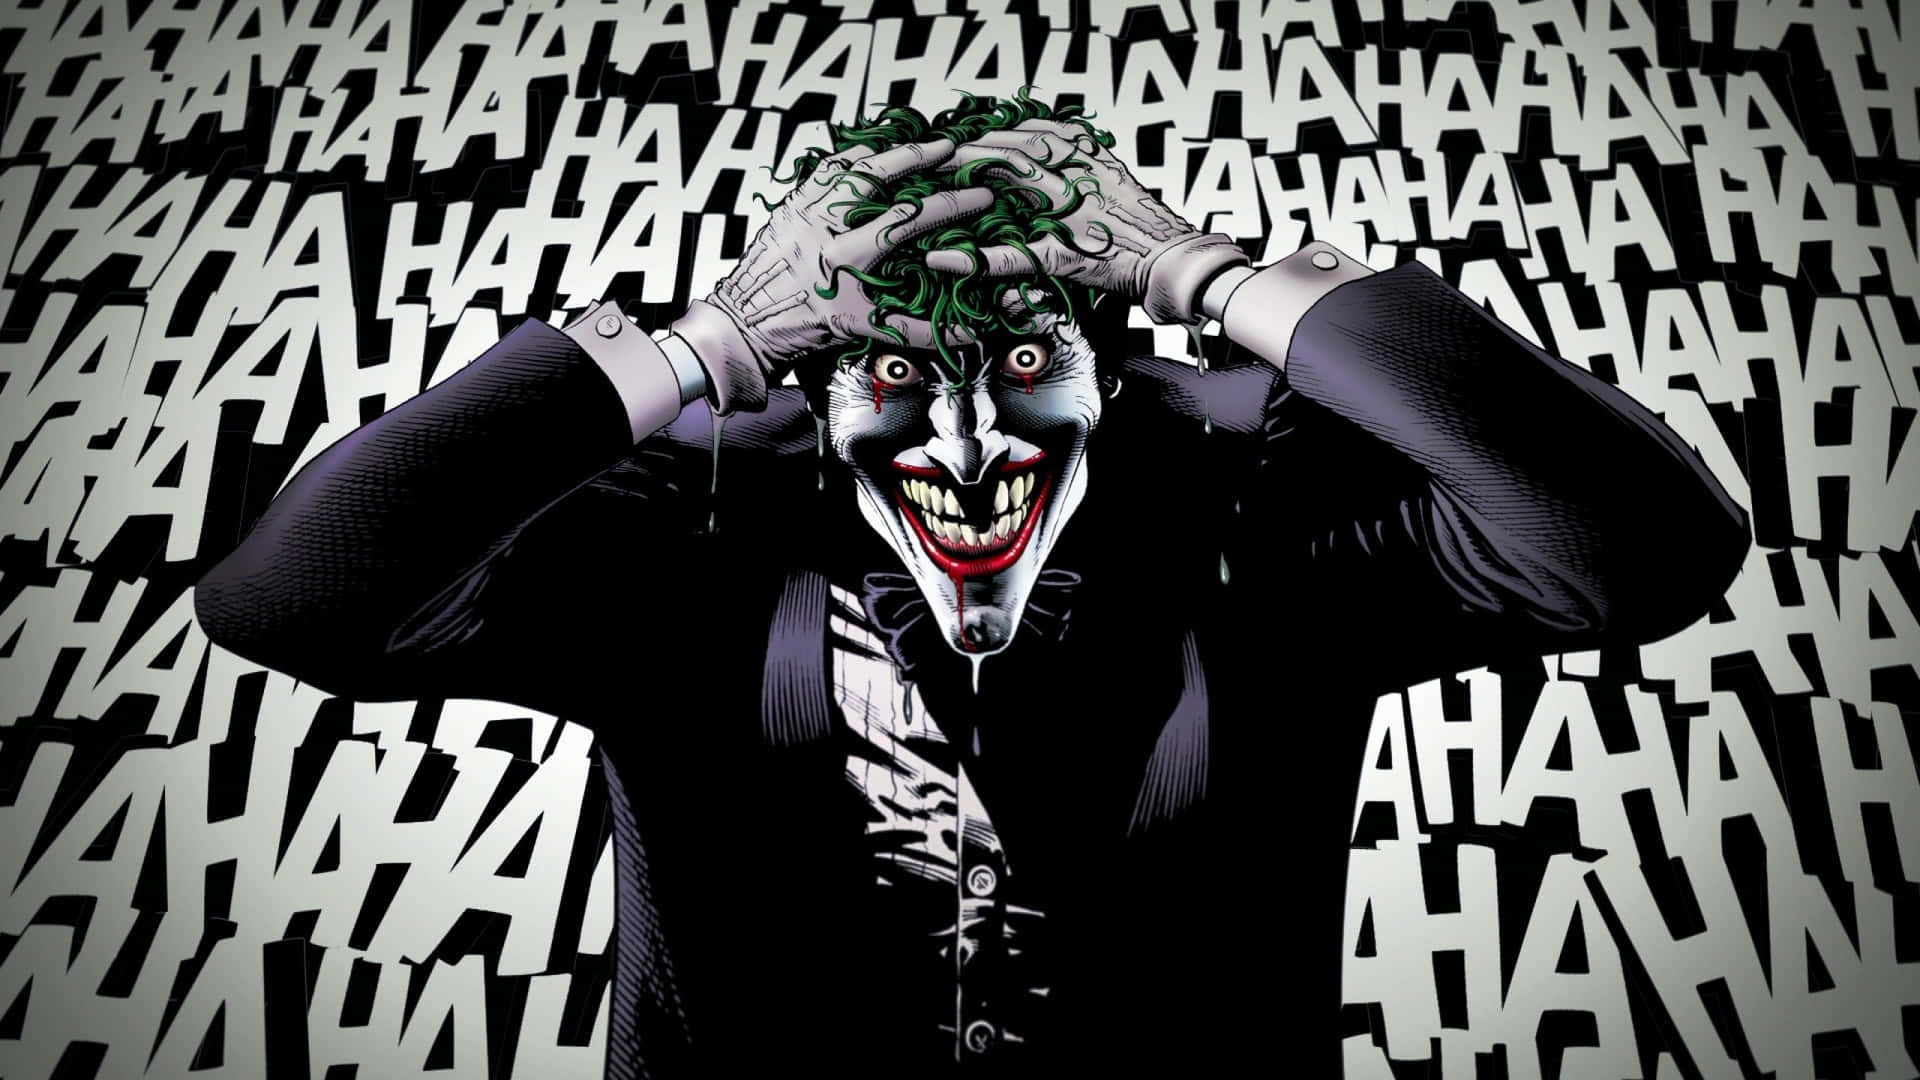 The Unsettling Laughter of the Joker Wallpaper